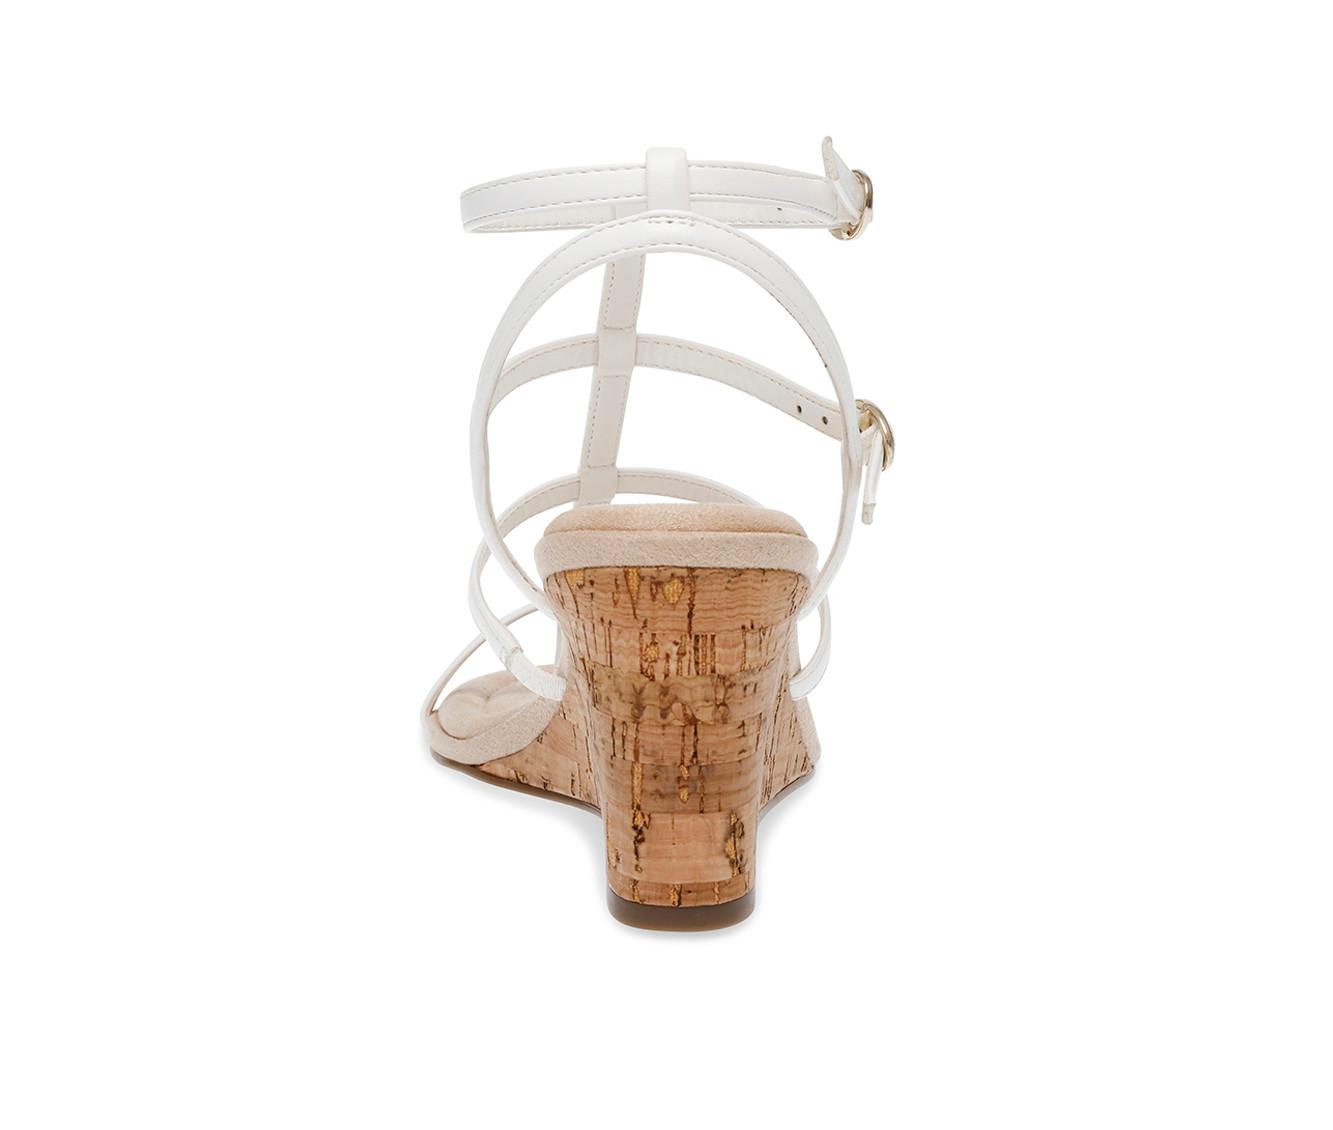 Women's Anne Klein Seville Wedge Sandals